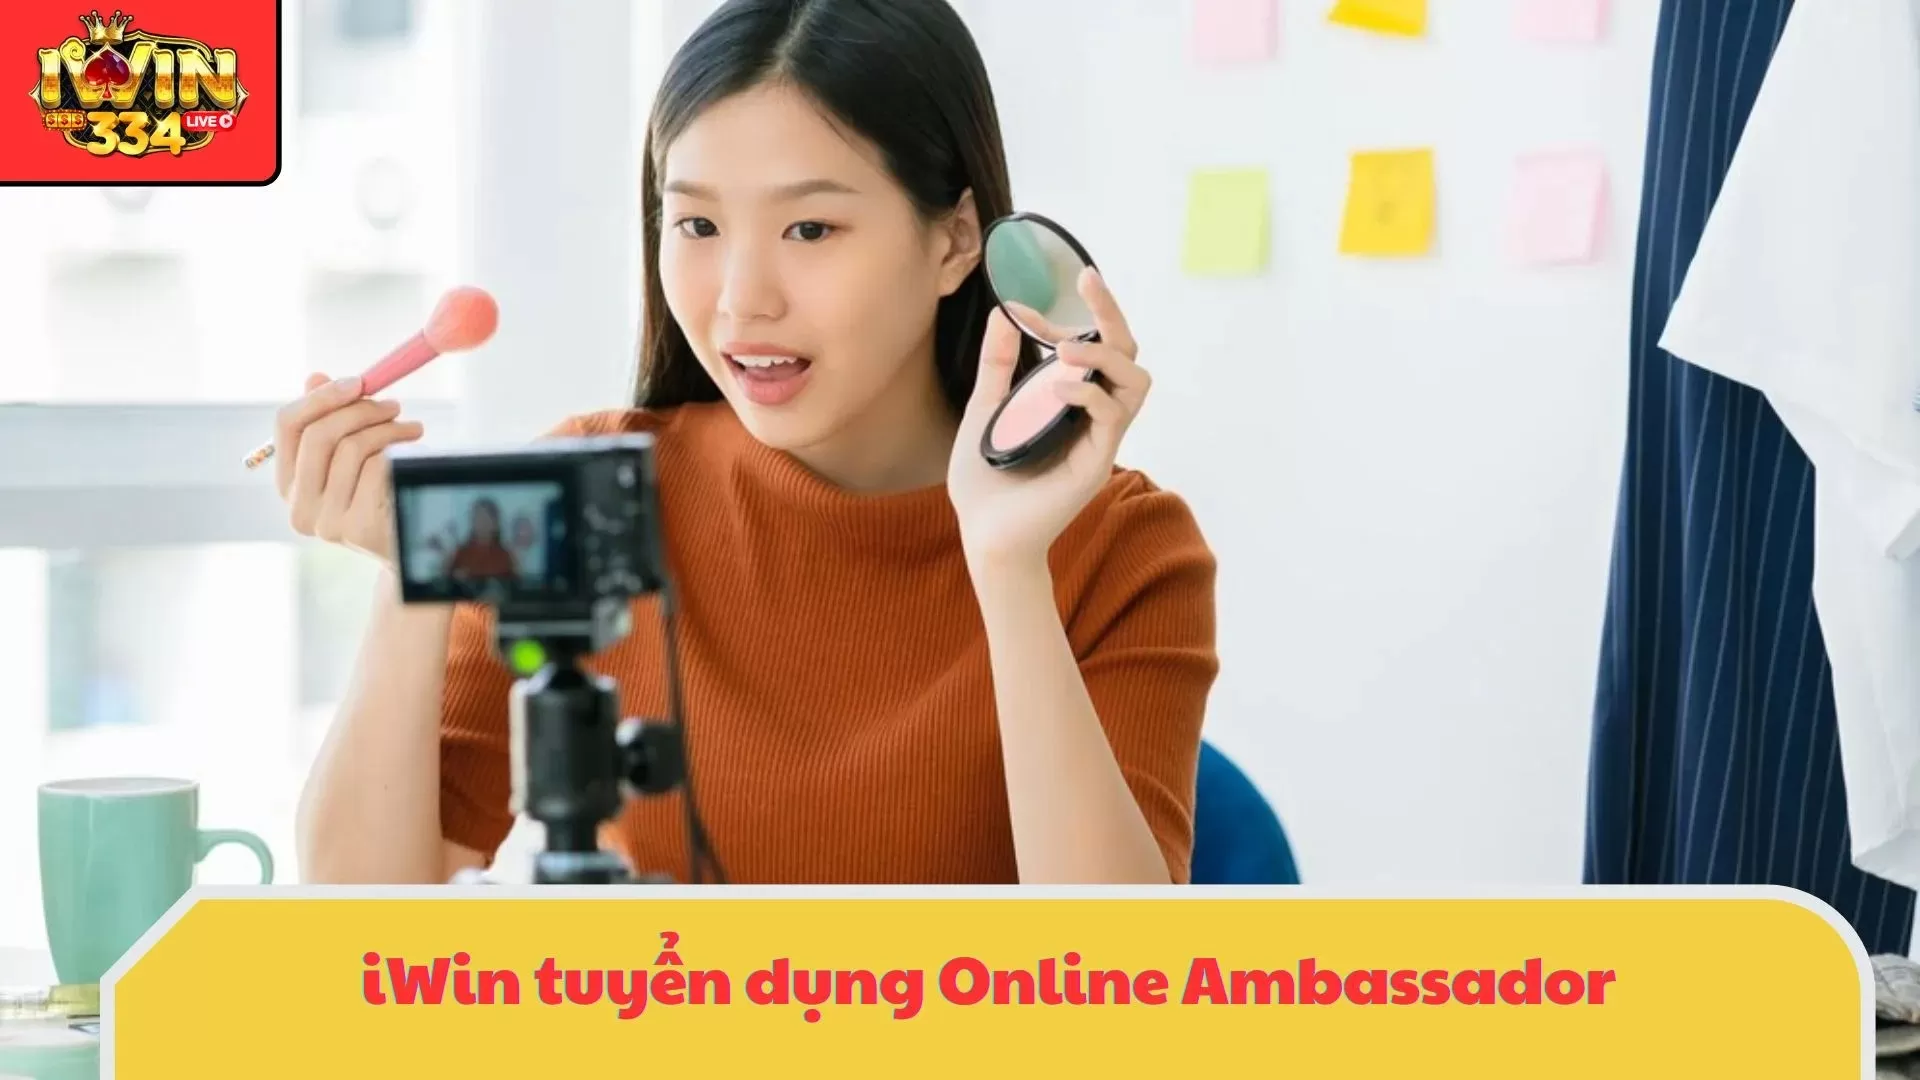 iWin tuyển dụng vị trí OA (Online Ambassador) mới nhất lương cạnh tranh